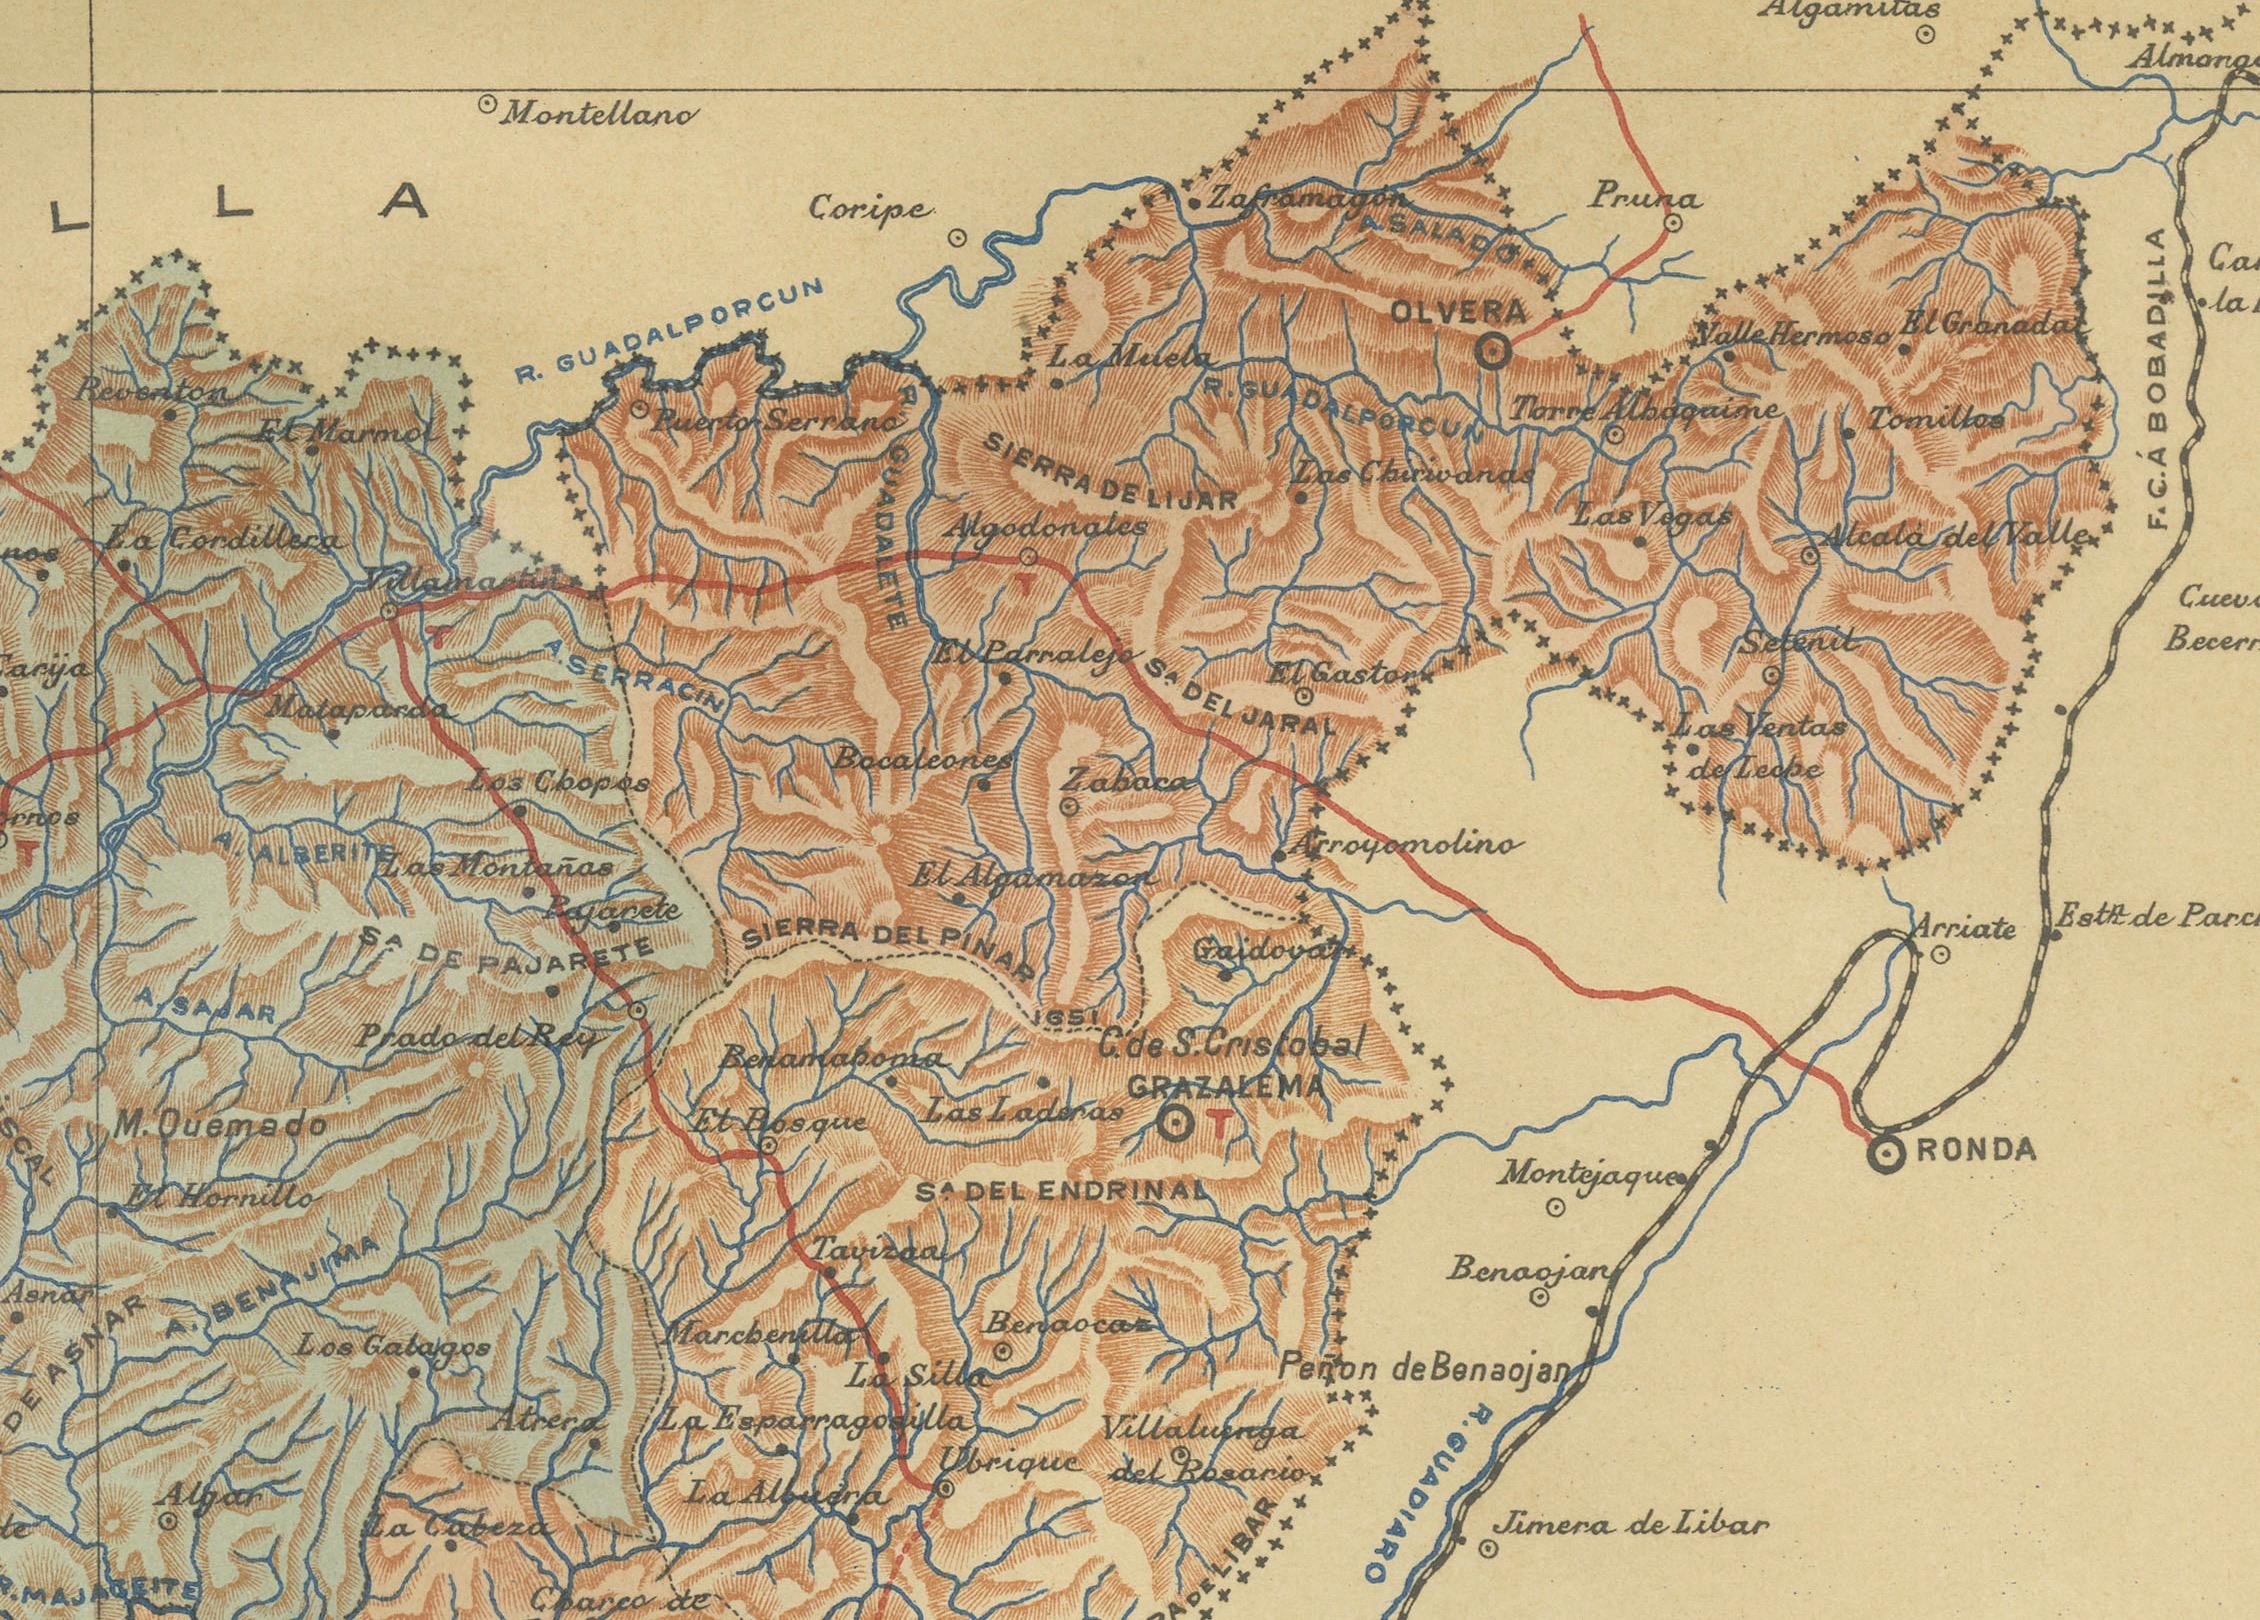 Die Karte zeigt die Provinz Cádiz in der autonomen Gemeinschaft Andalusien, Spanien, aus dem Jahr 1901. Sie weist verschiedene geografische und vom Menschen geschaffene Merkmale auf:

Die Karte zeigt die abwechslungsreiche Landschaft von Cádiz,